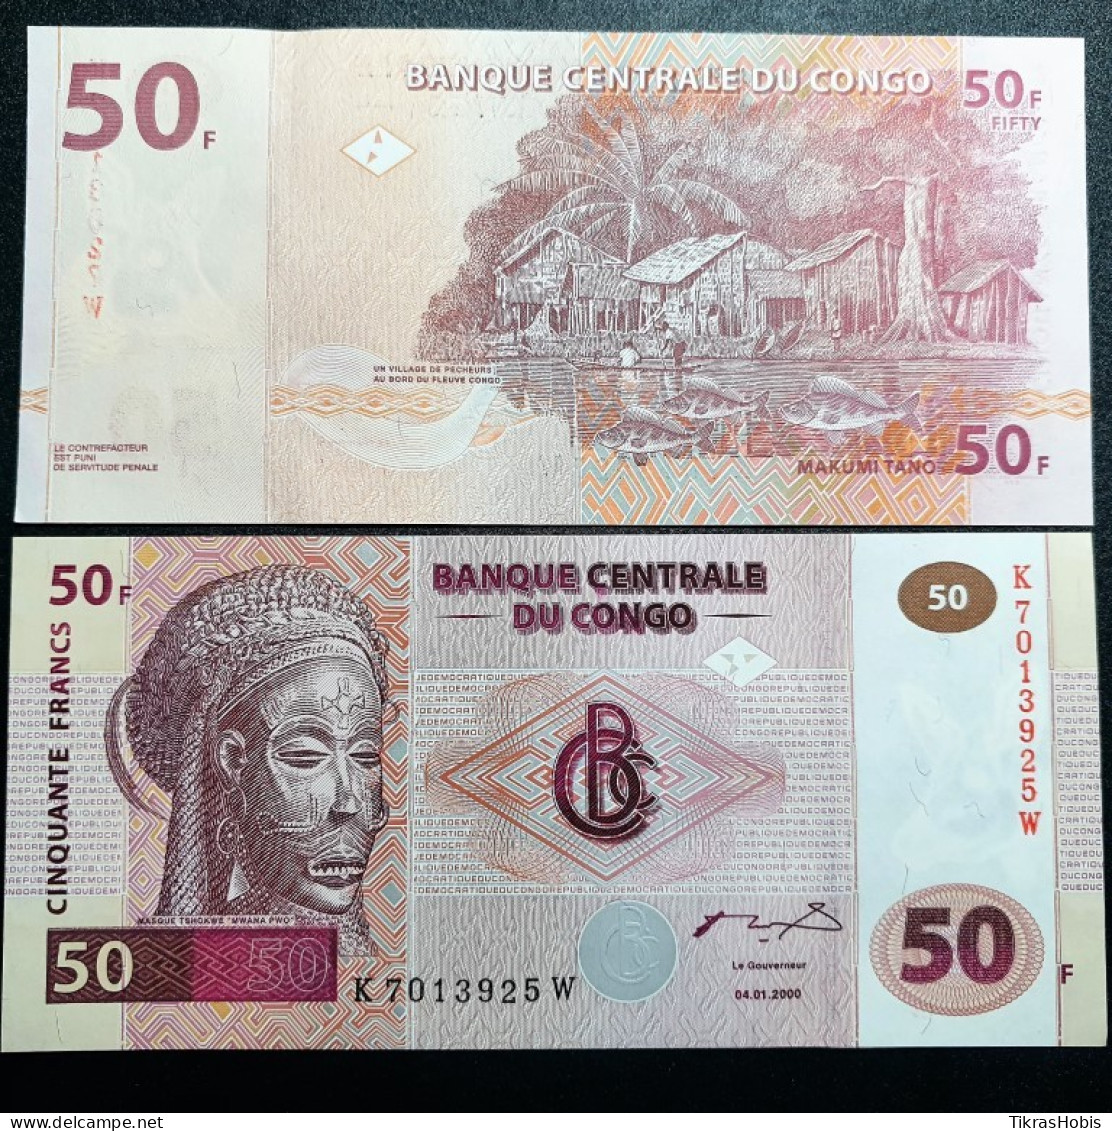 Kong 50 Francs, 2000 P-91A - Democratic Republic Of The Congo & Zaire